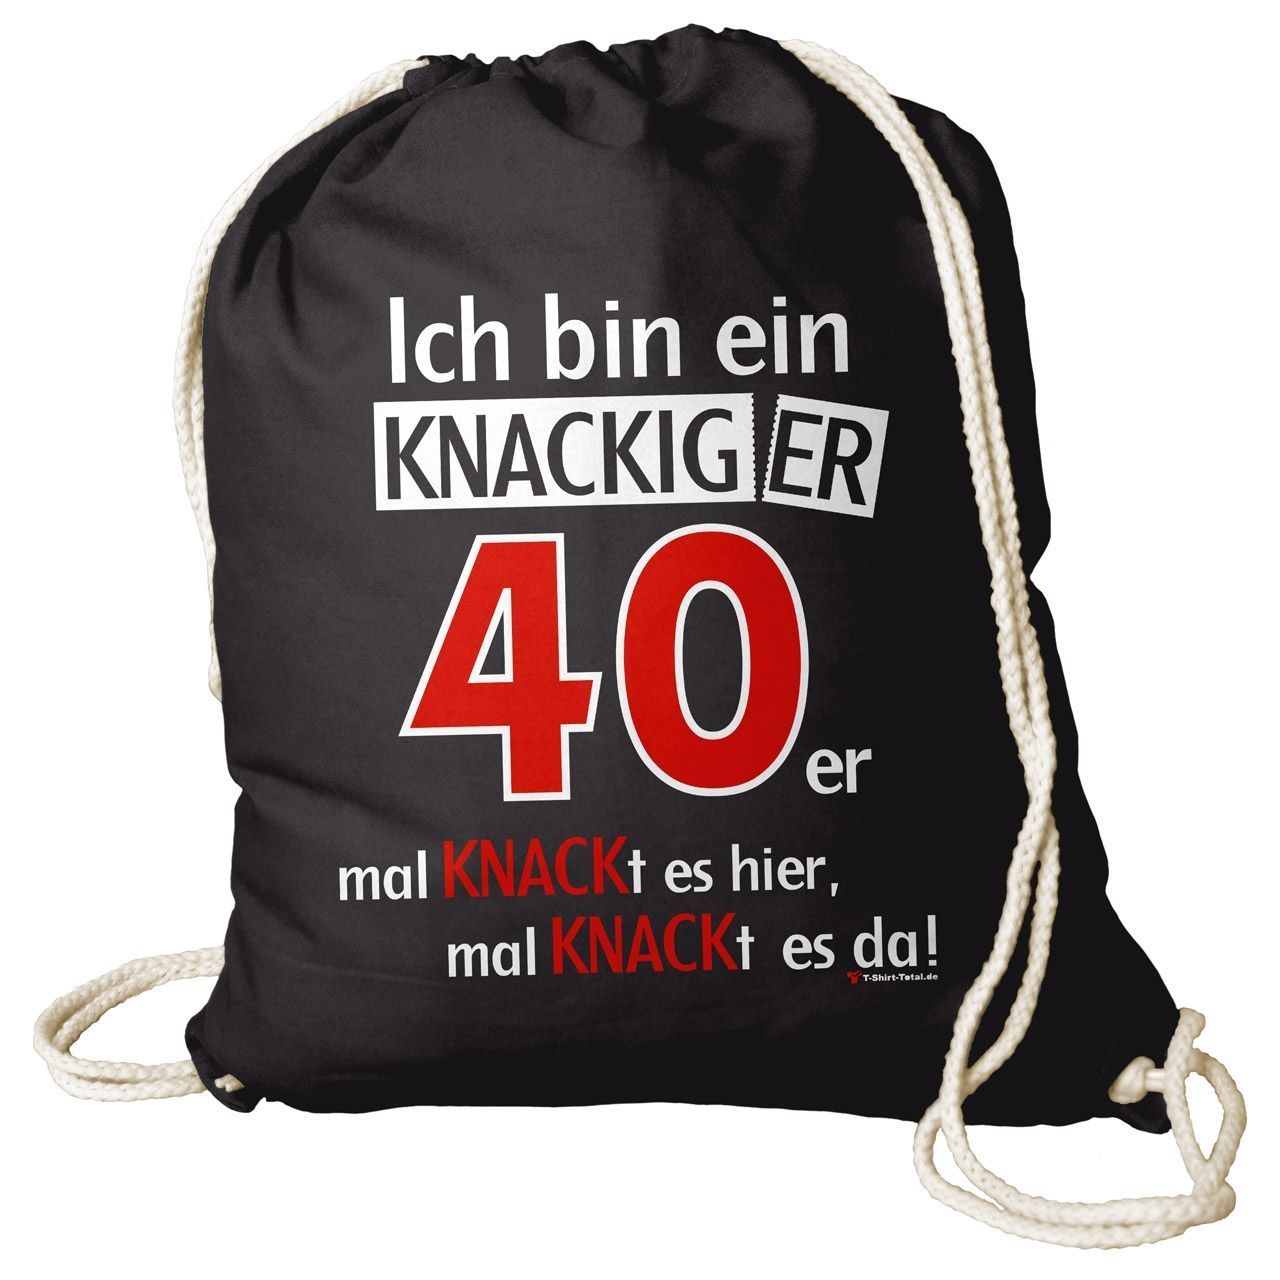 Knackiger 40er Rucksack Beutel schwarz